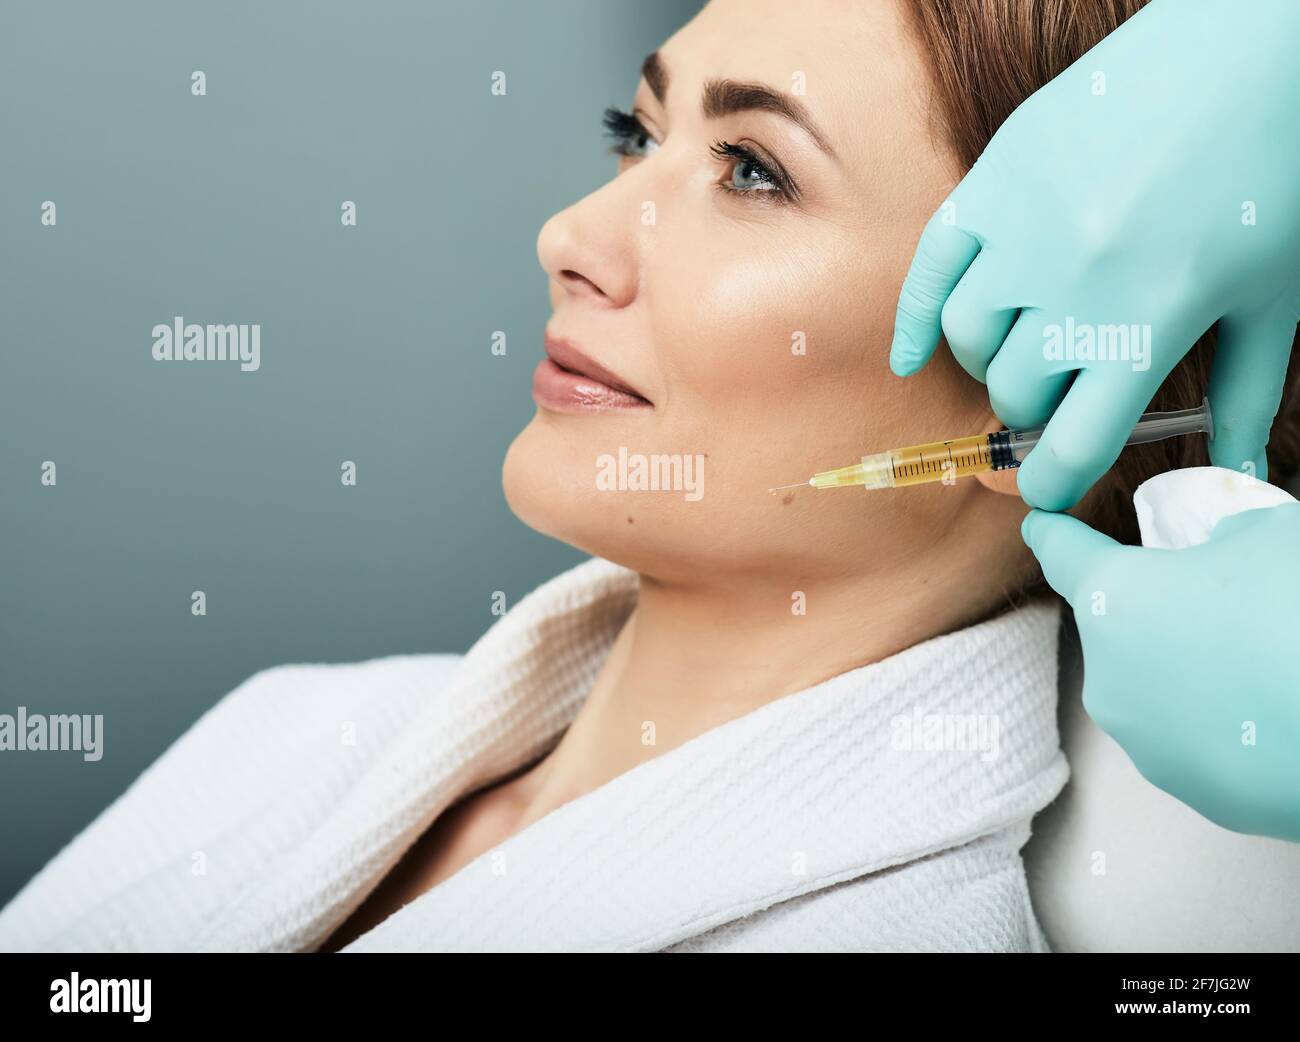 Iniezione di Plasmolifting, plasma terapia. Procedura di cosmetologia per la pelle del viso della donna utilizzando plasma sanguigno Foto Stock